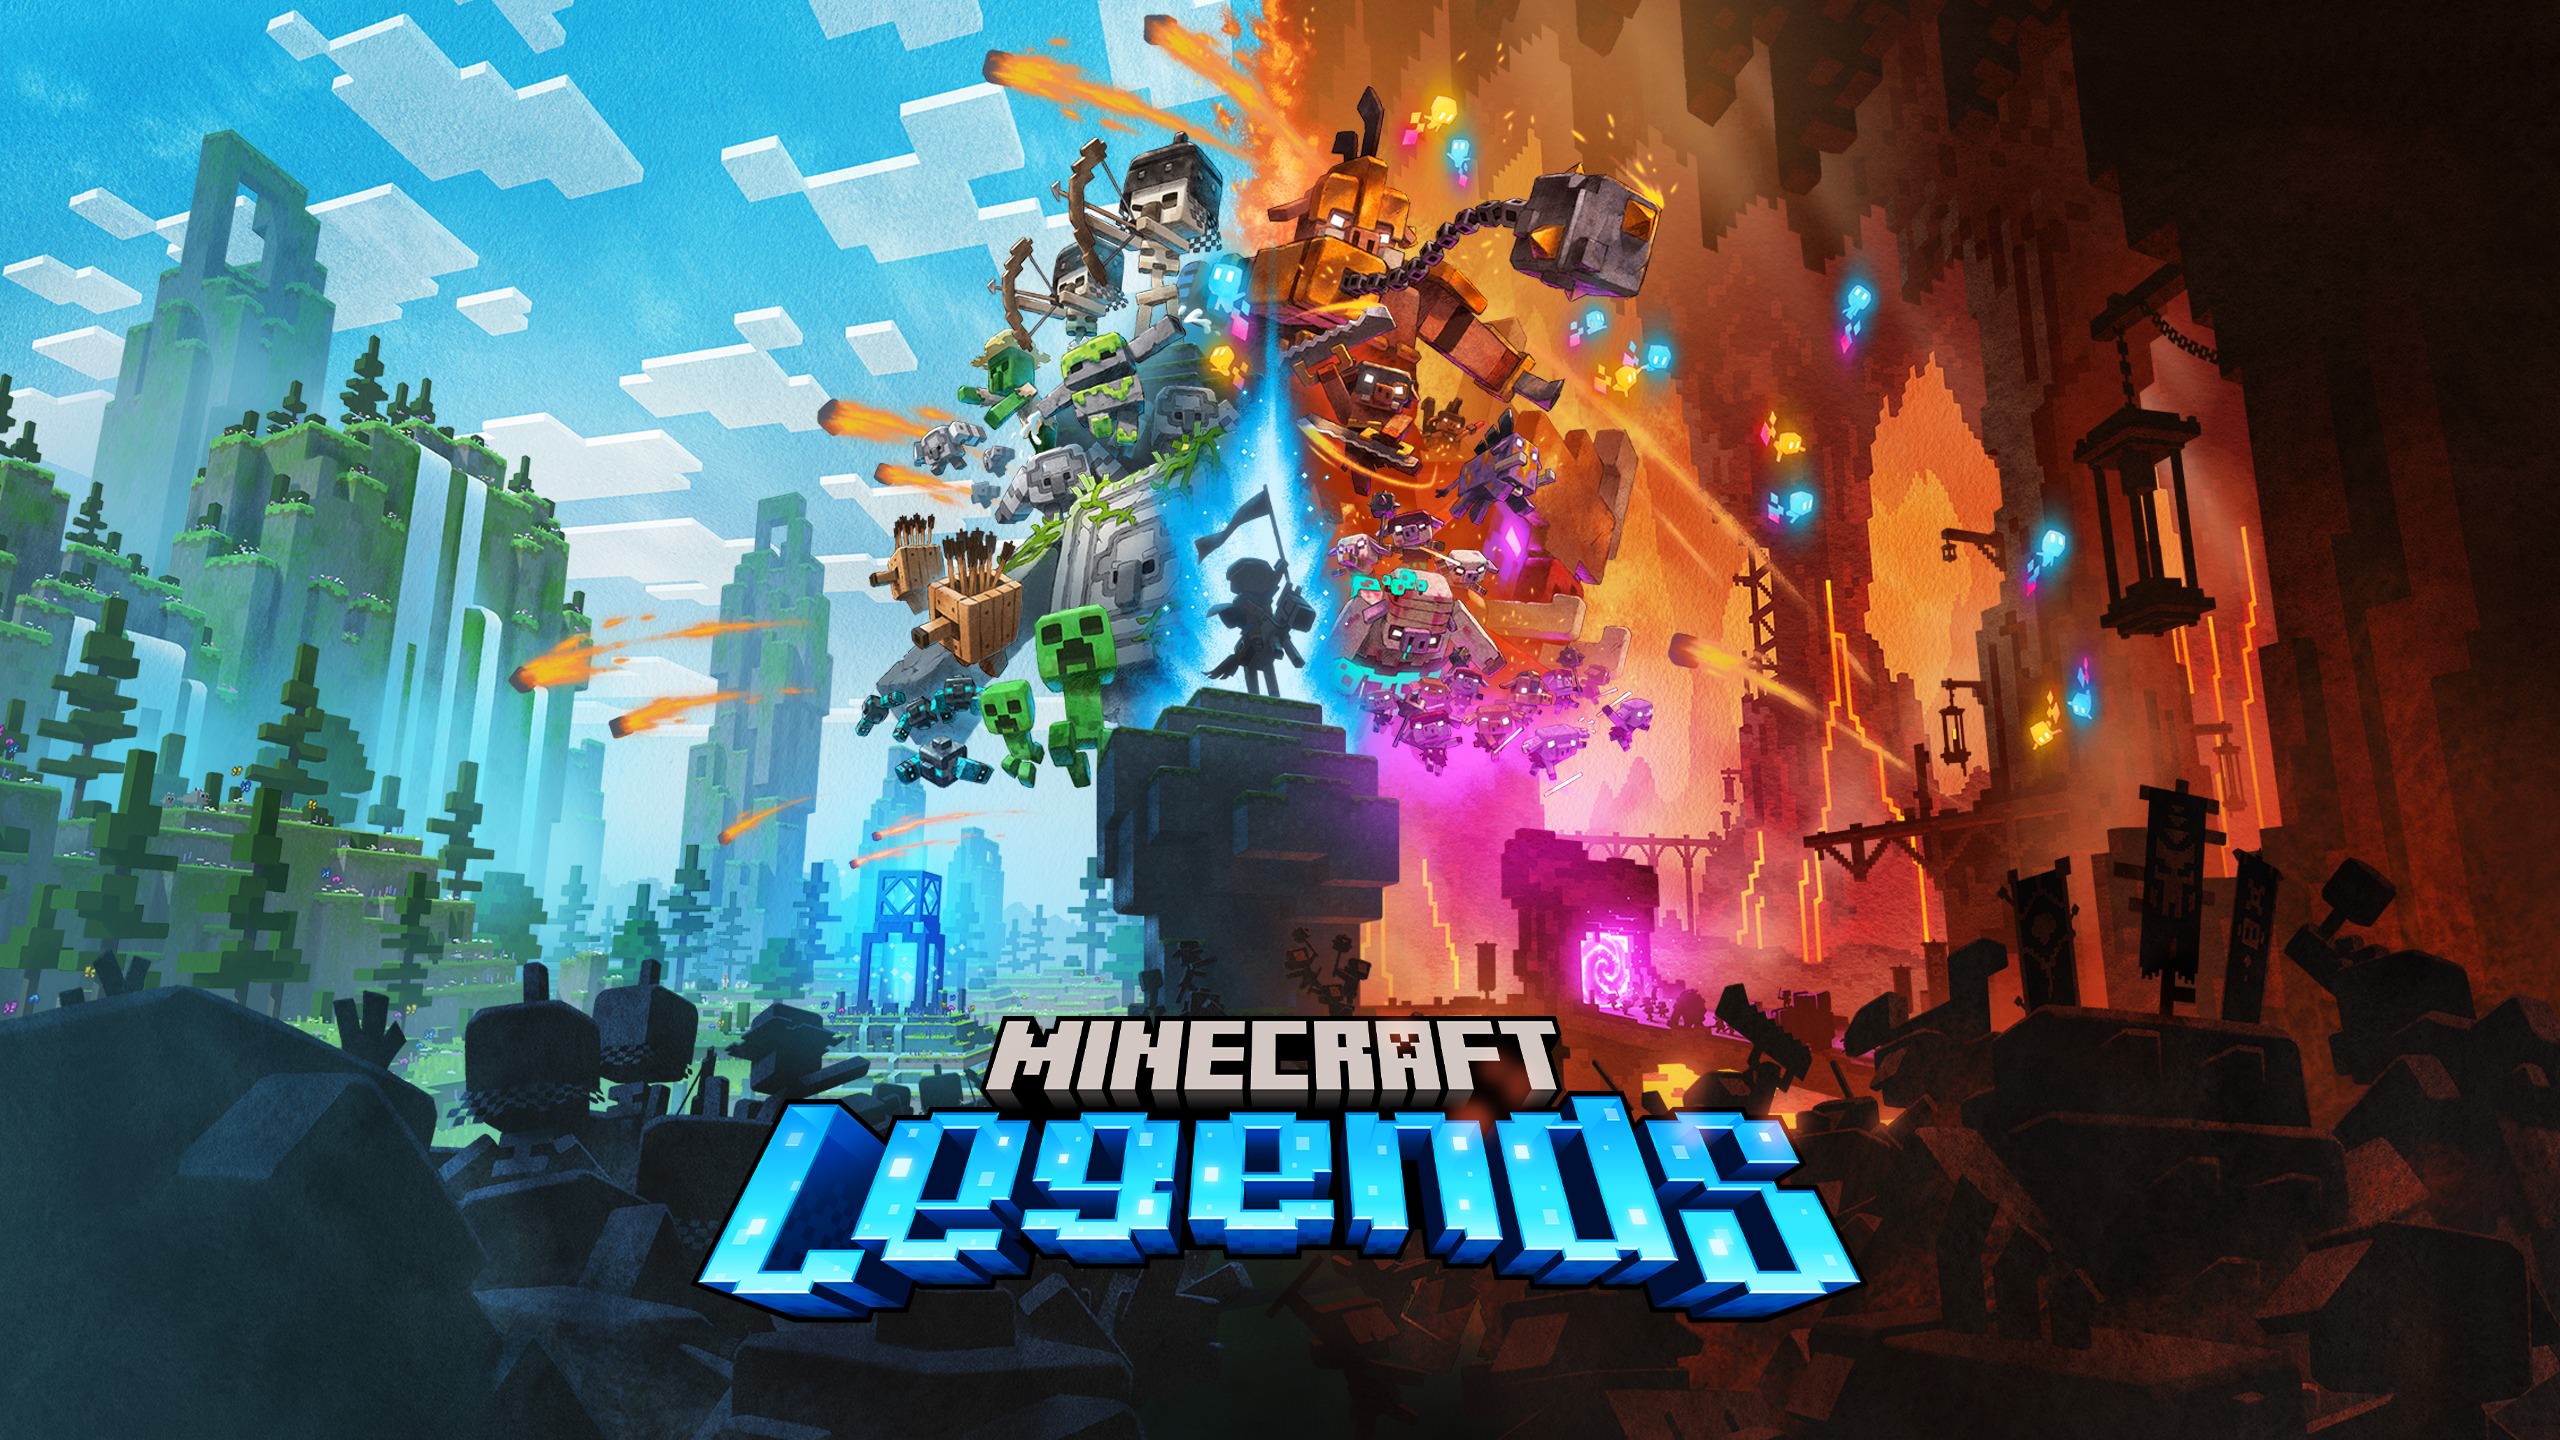 توضیحات پیرامون توسعه و جزئیات داستان در ویدیوی جدید Minecraft Legends